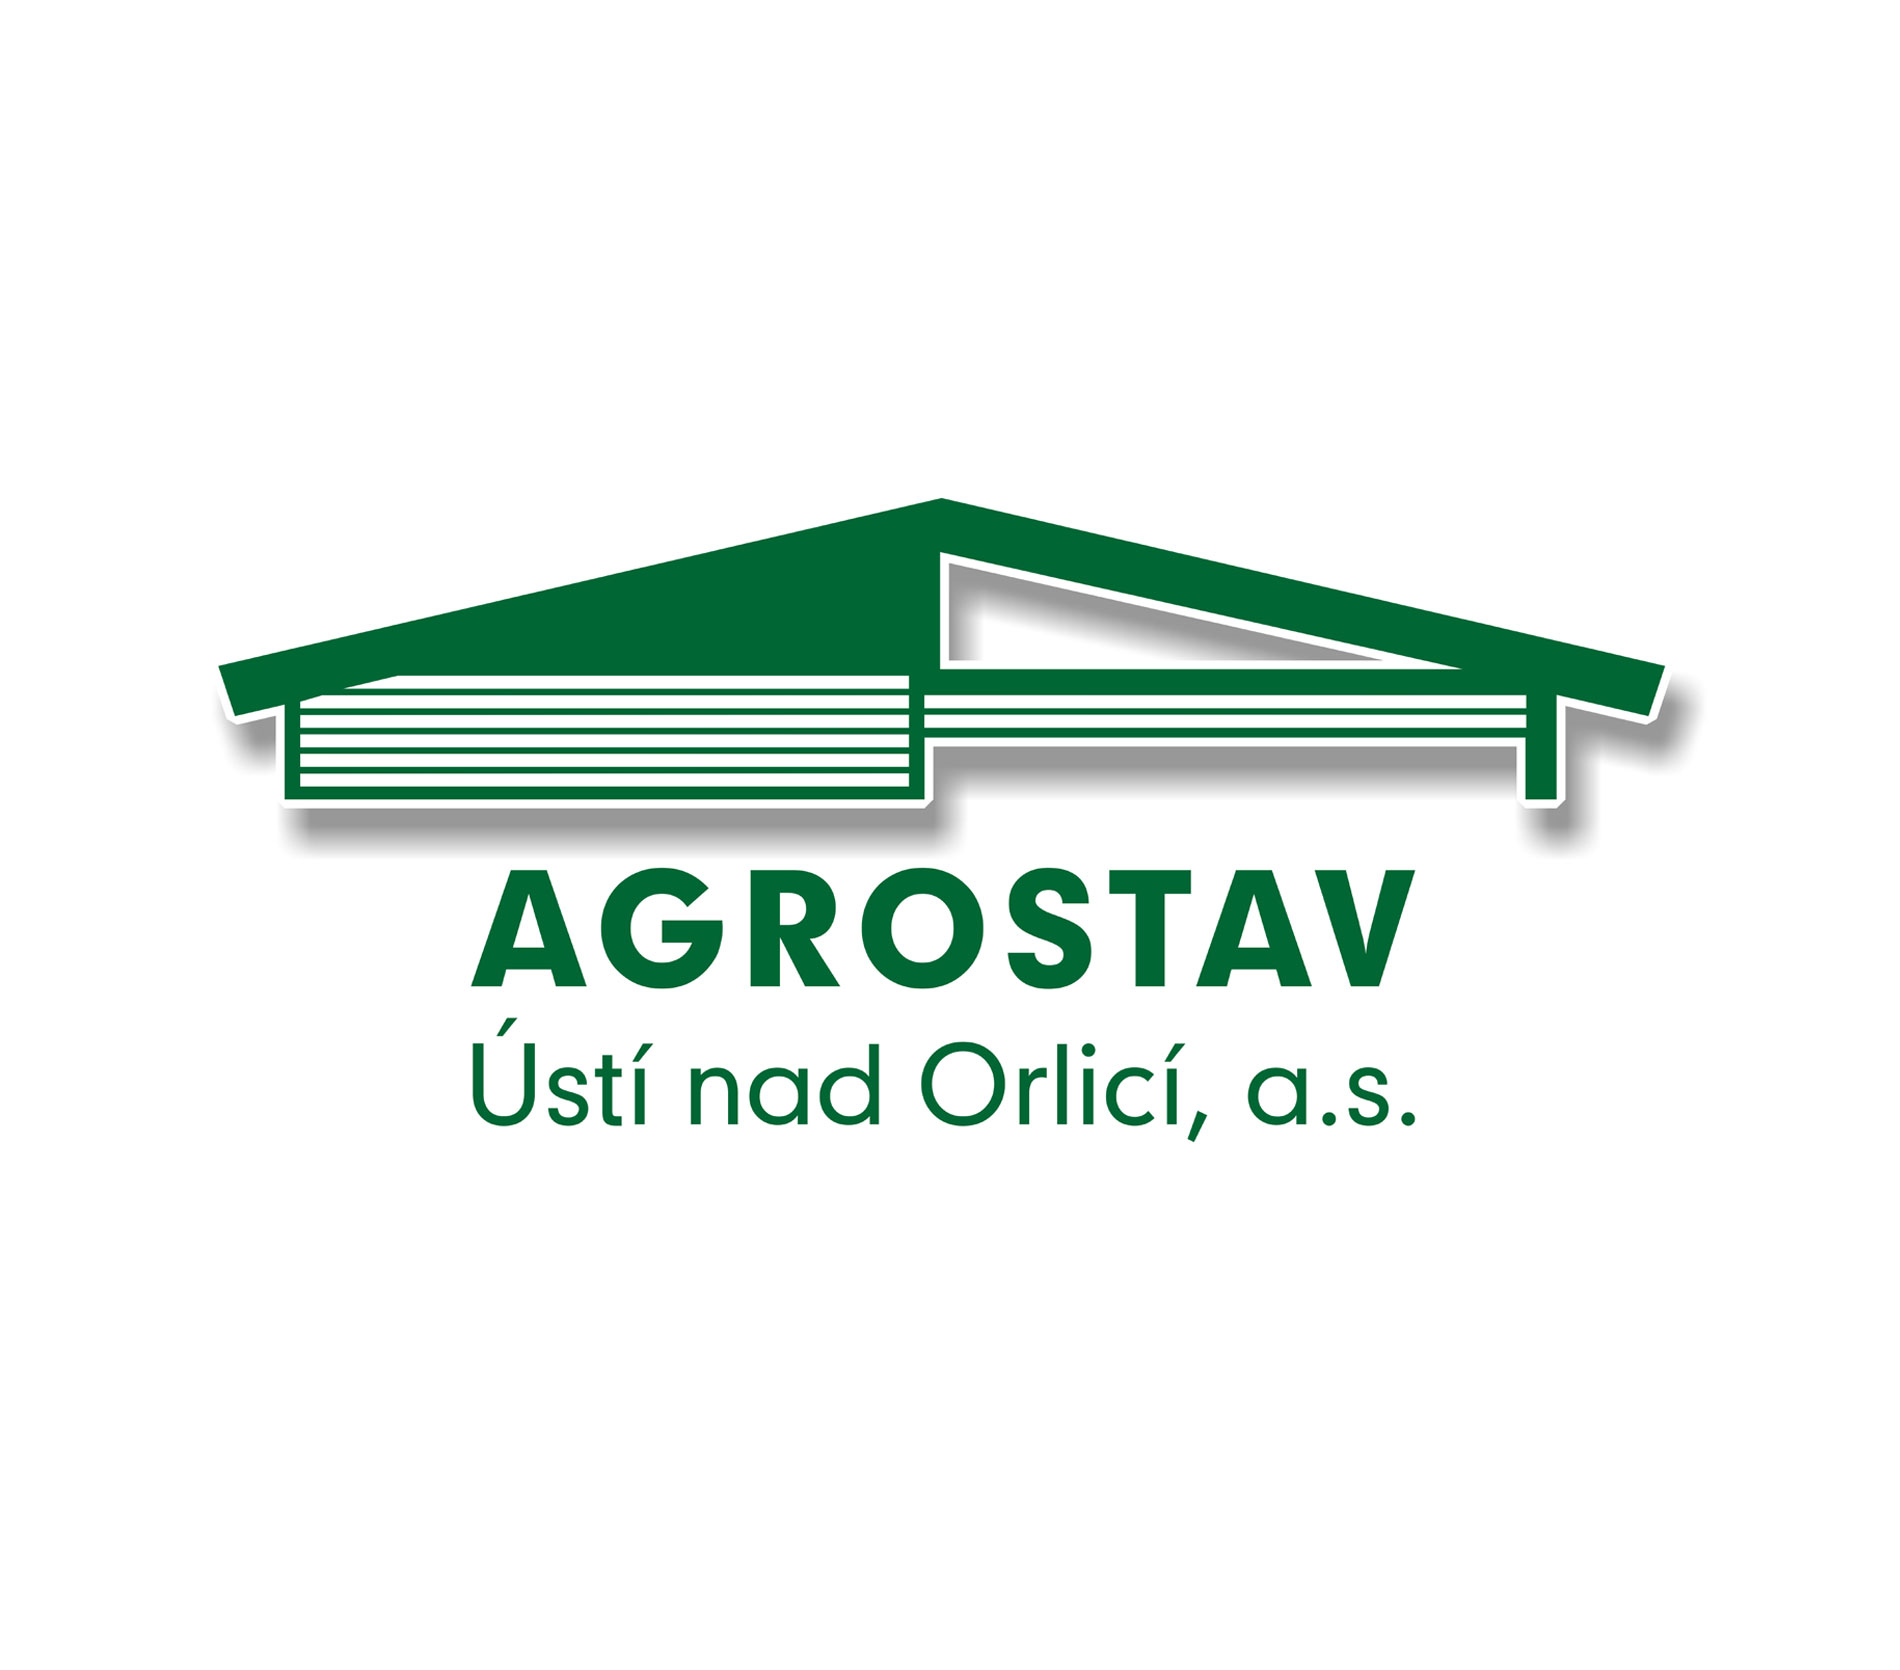 Agrostav - Ústí nad Orlicí